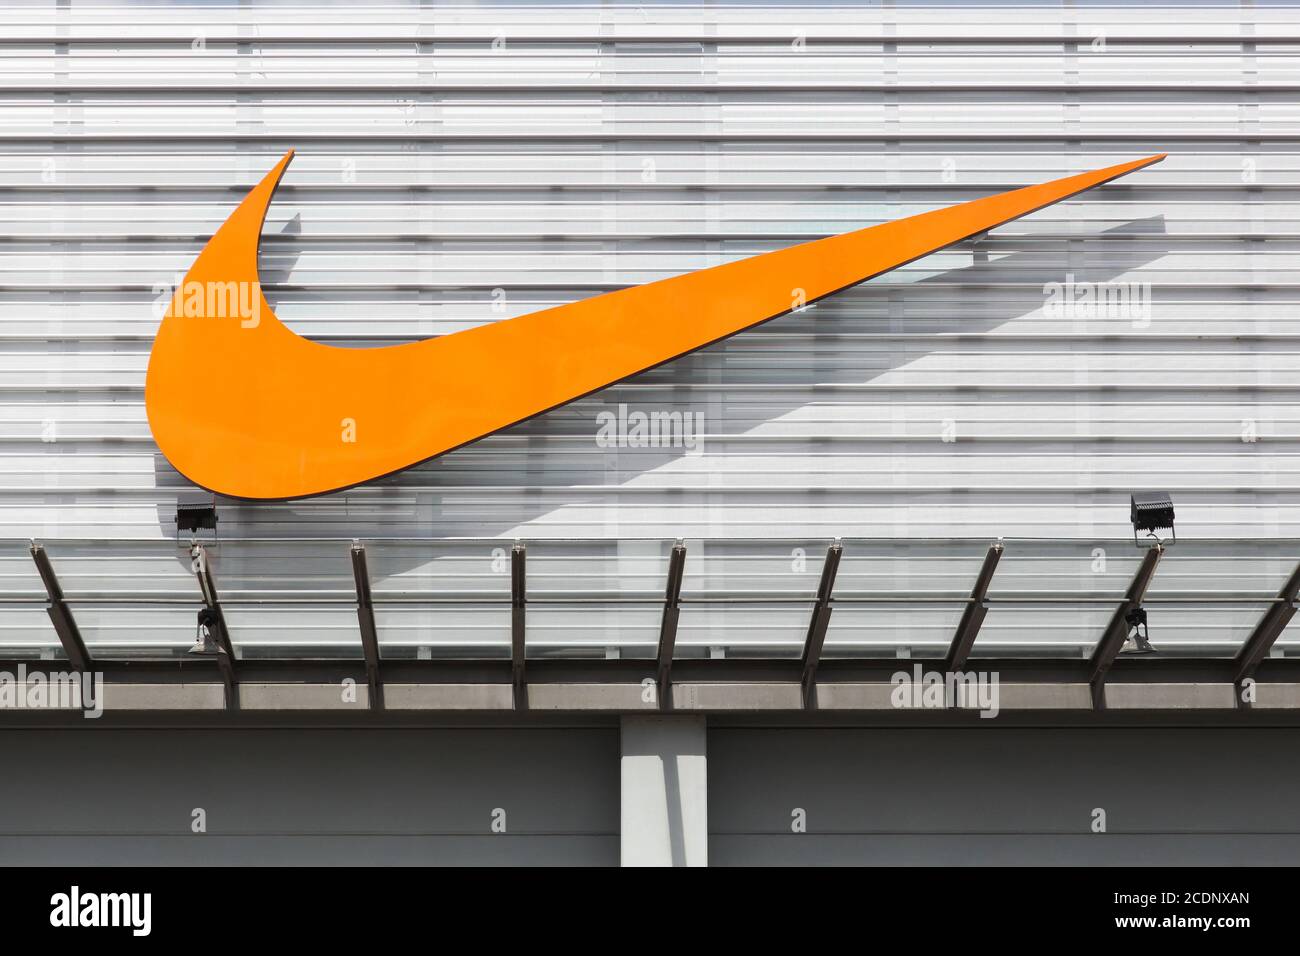 Bremen, Deutschland - 2. Juli 2017: Nike Logo an der Fassade eines  Geschäfts. Nike ist ein amerikanisches Unternehmen, das sich auf  Sportgeräte mit Sitz in Beaverton spezialisiert hat Stockfotografie - Alamy